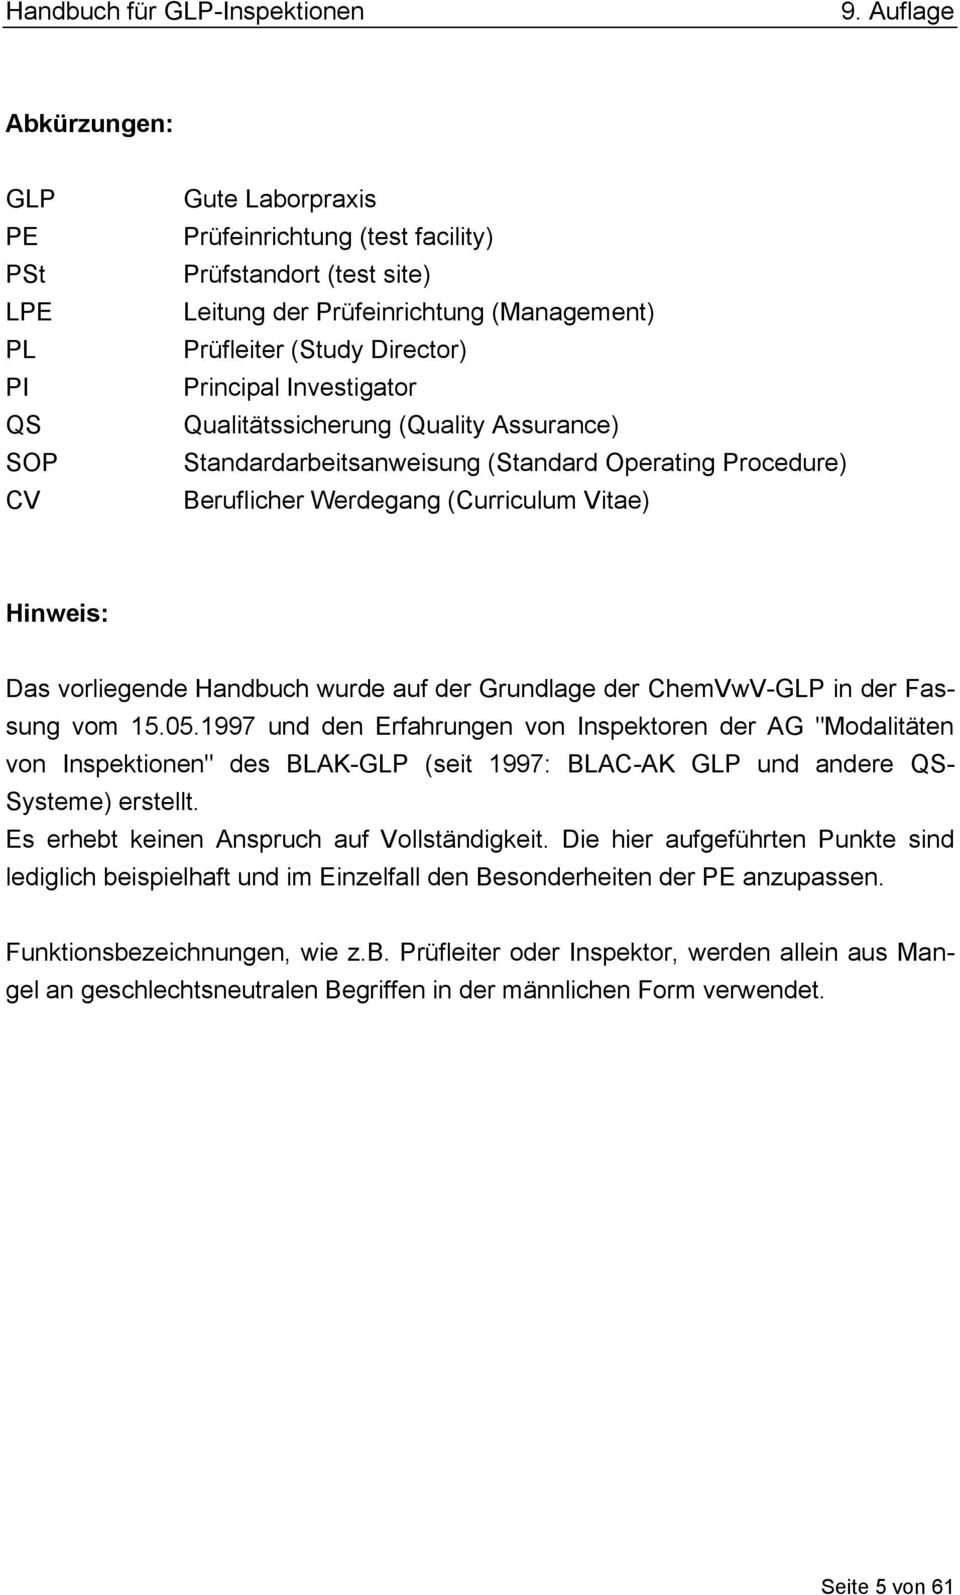 Grundlage der ChemVwV-GLP in der Fassung vom 15.05.1997 und den Erfahrungen von Inspektoren der AG "Modalitäten von Inspektionen" des BLAK-GLP (seit 1997: BLAC-AK GLP und andere QS- Systeme) erstellt.